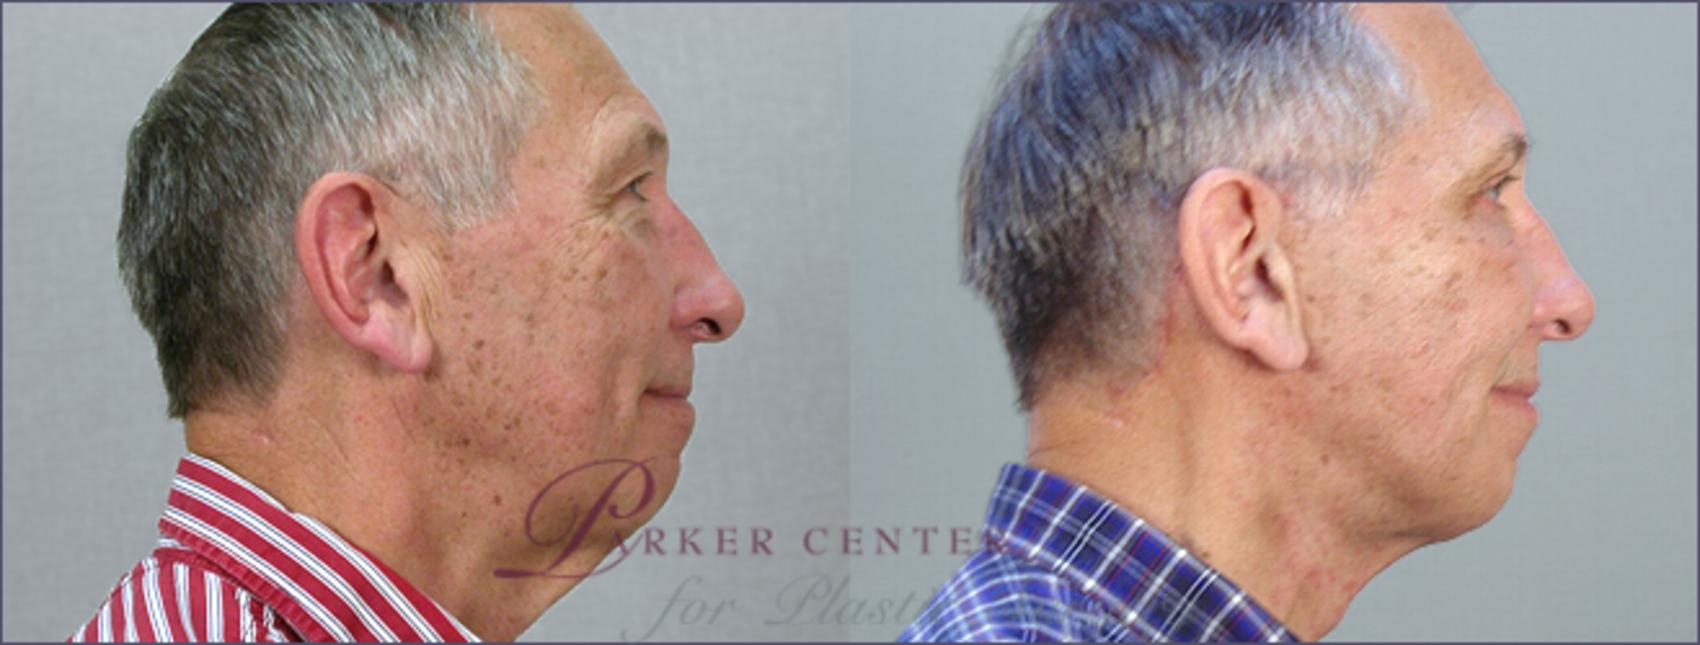 Facelift Case 13 Before & After View #2 | Paramus, NJ | Parker Center for Plastic Surgery